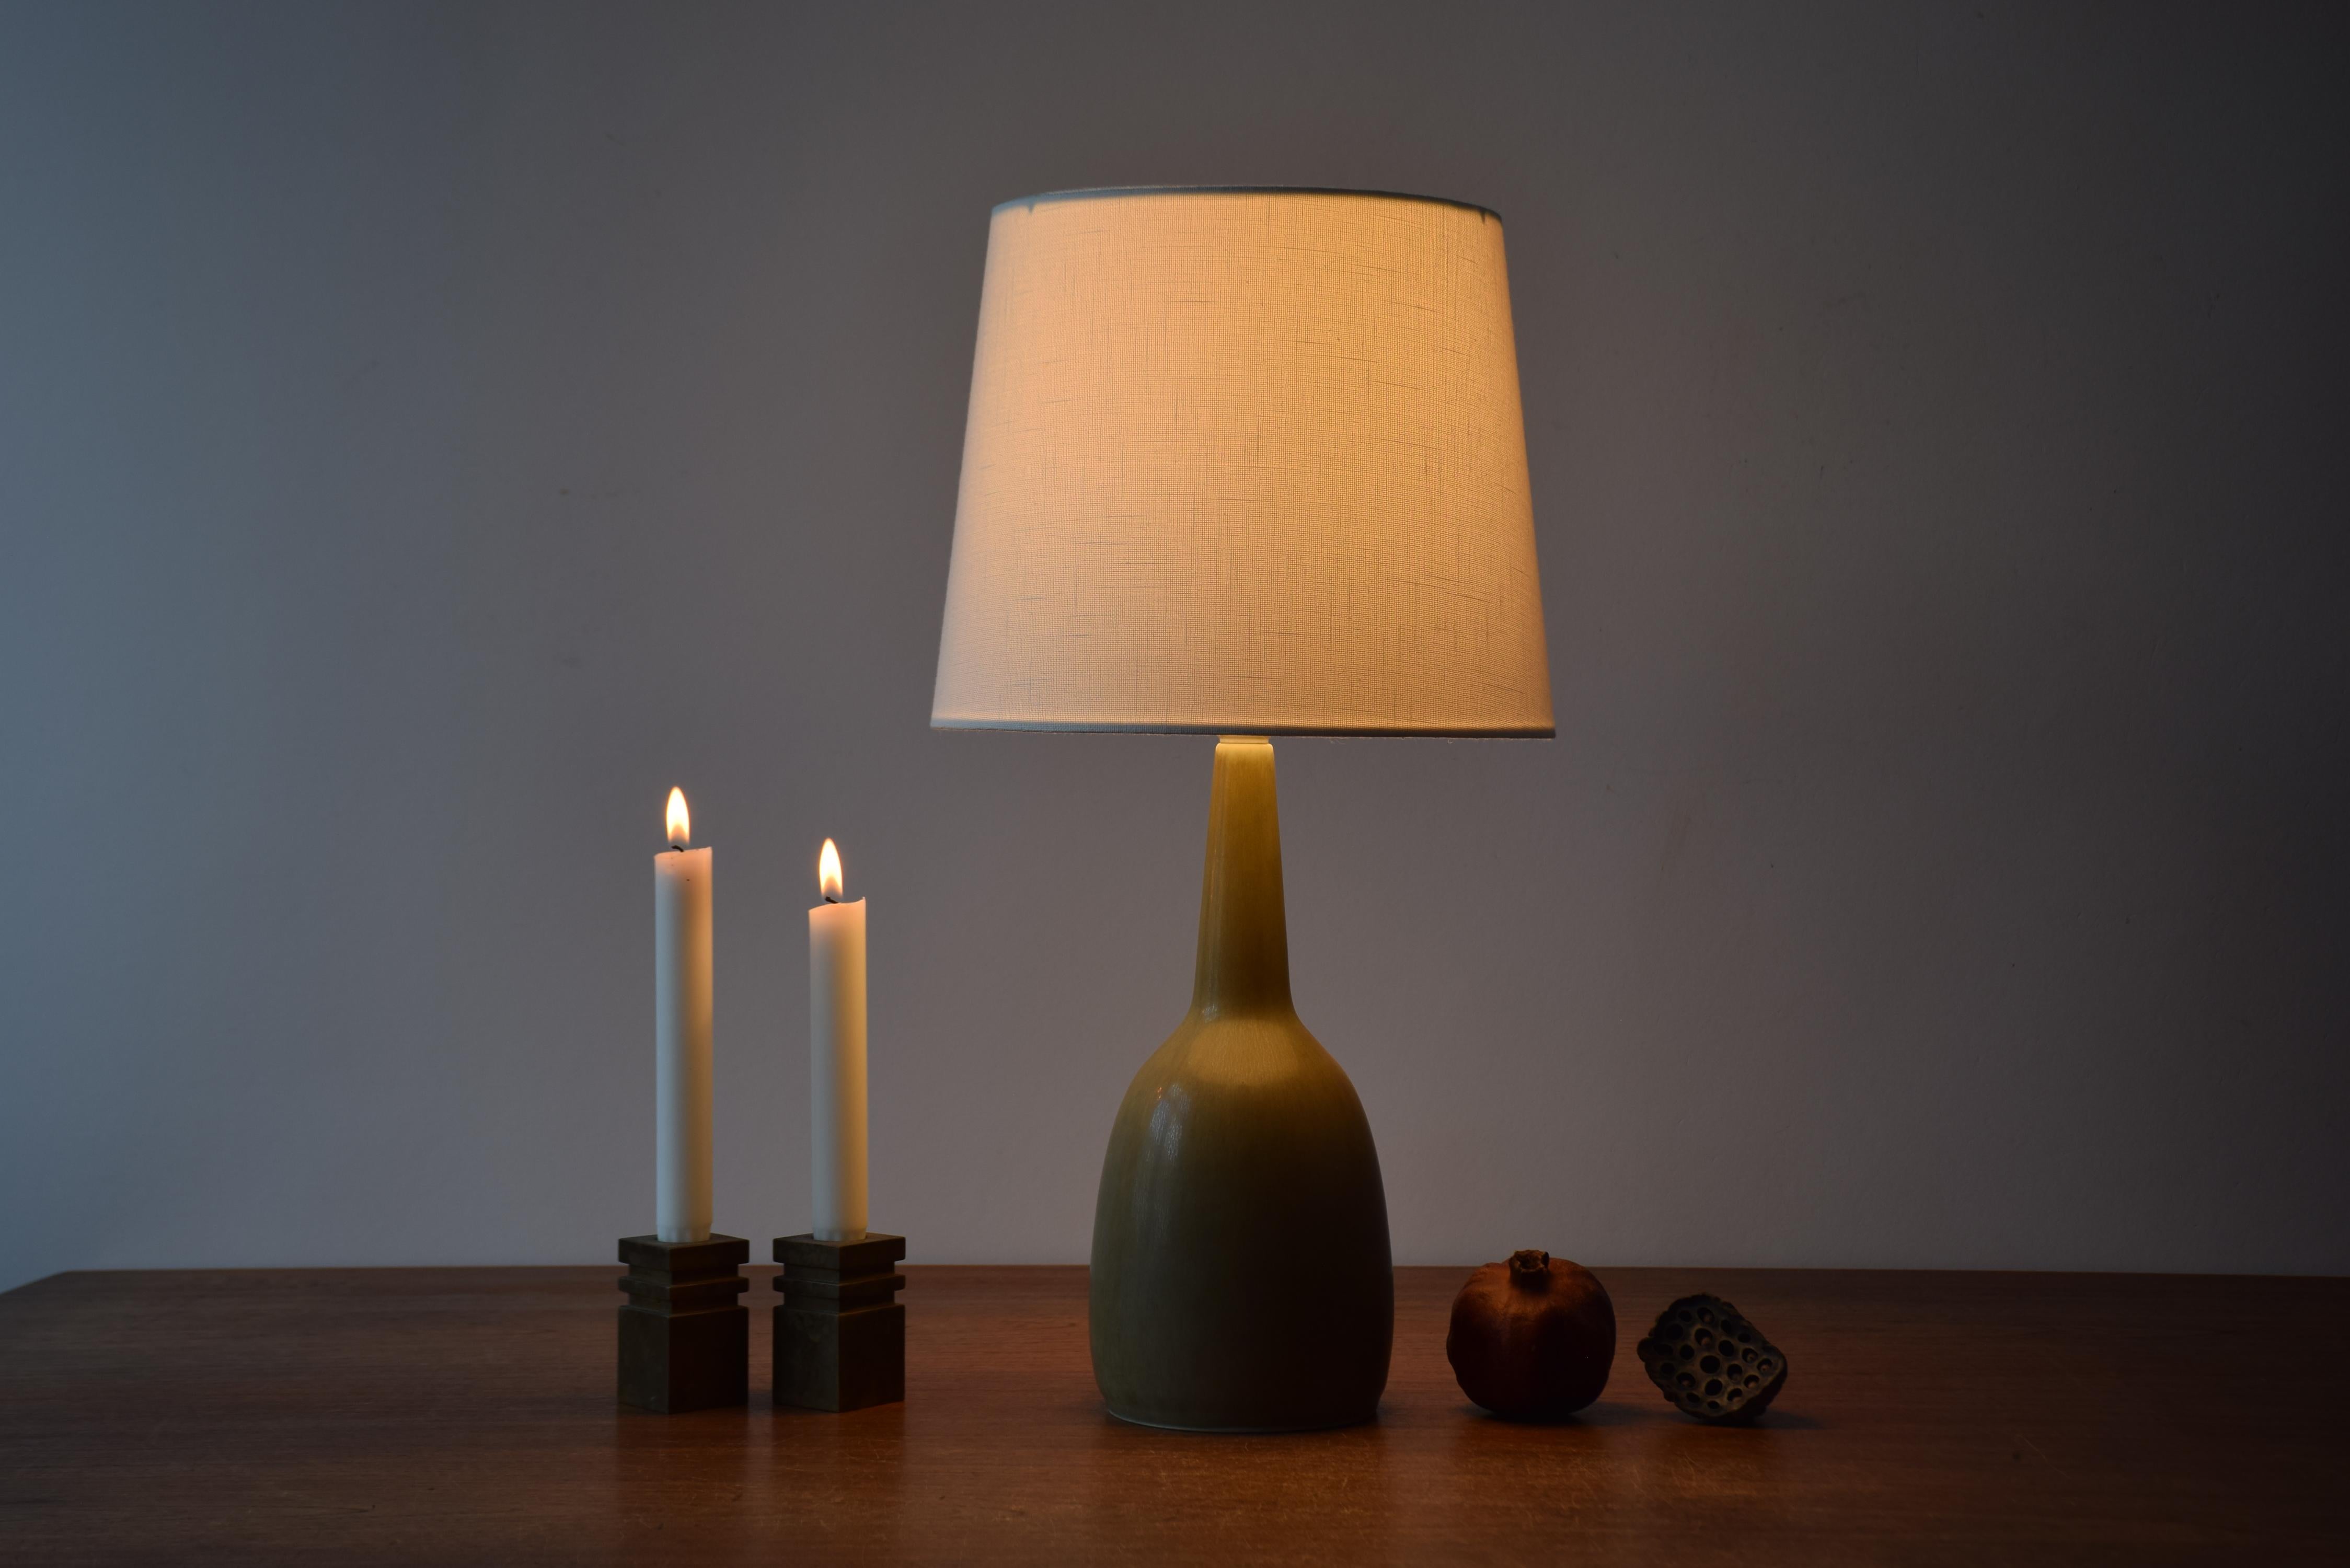 Lampe de table du milieu du siècle de la marque danoise HaresFus avec glaçure jaune pâle haresfur.
La lampe a été conçue par Per Linnemann-Schmidt et produite vers les années 1950.

Un nouvel abat-jour conçu au Danemark est inclus. Ils sont